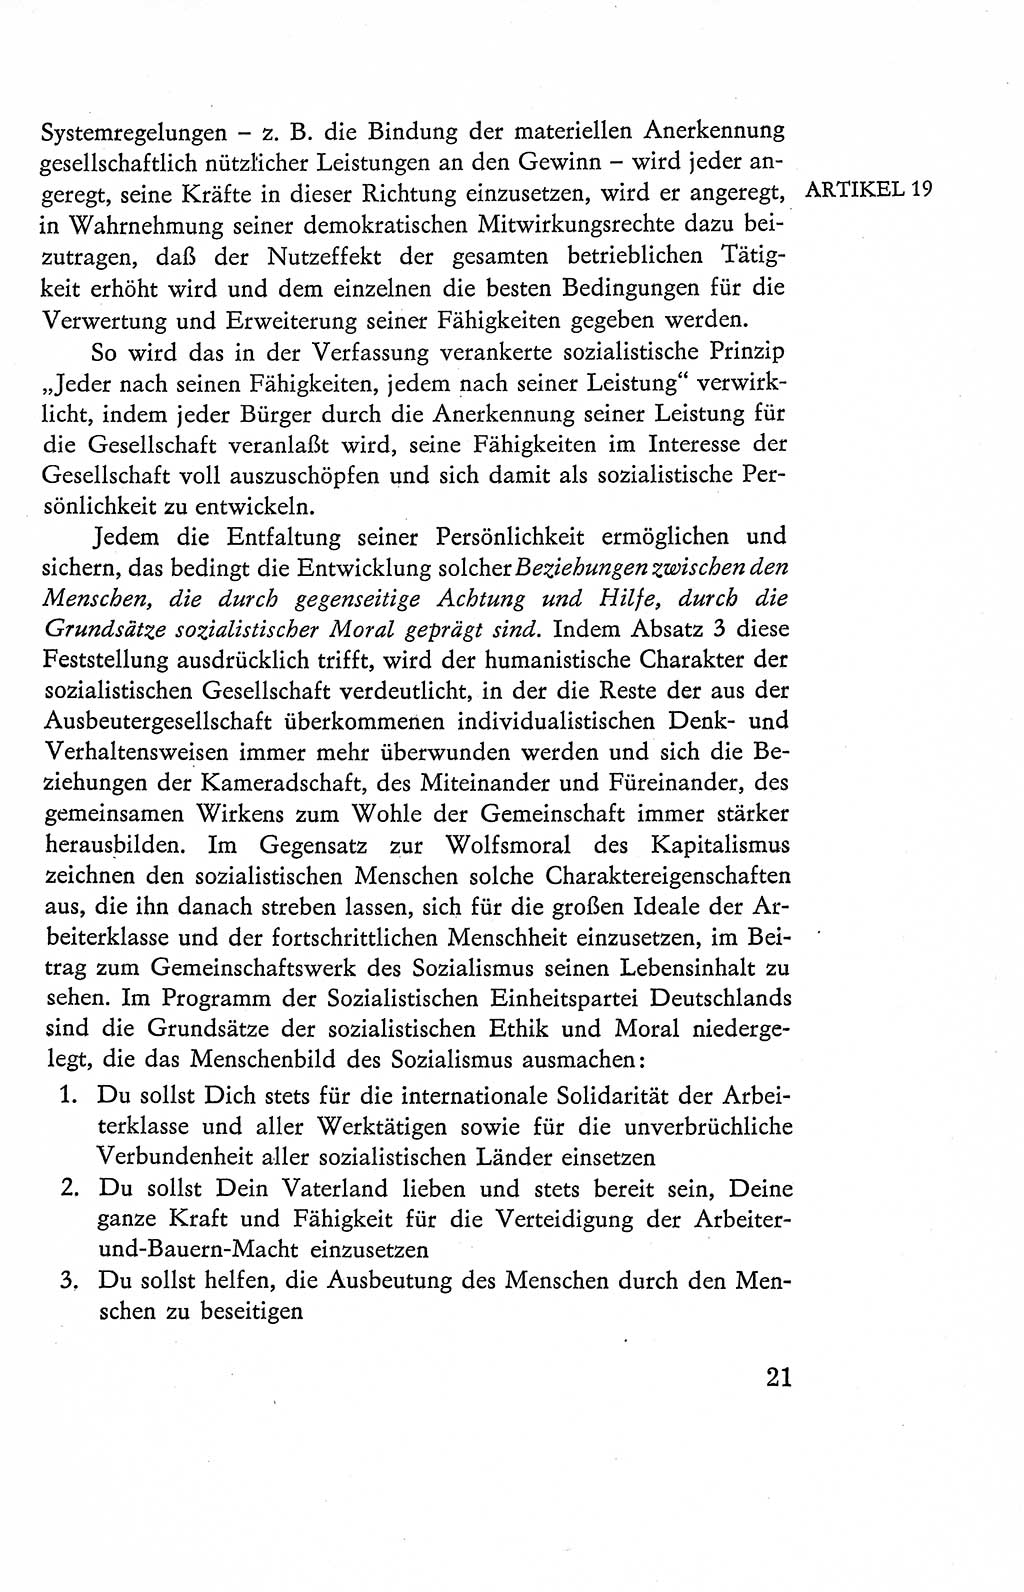 Verfassung der Deutschen Demokratischen Republik (DDR), Dokumente, Kommentar 1969, Band 2, Seite 21 (Verf. DDR Dok. Komm. 1969, Bd. 2, S. 21)